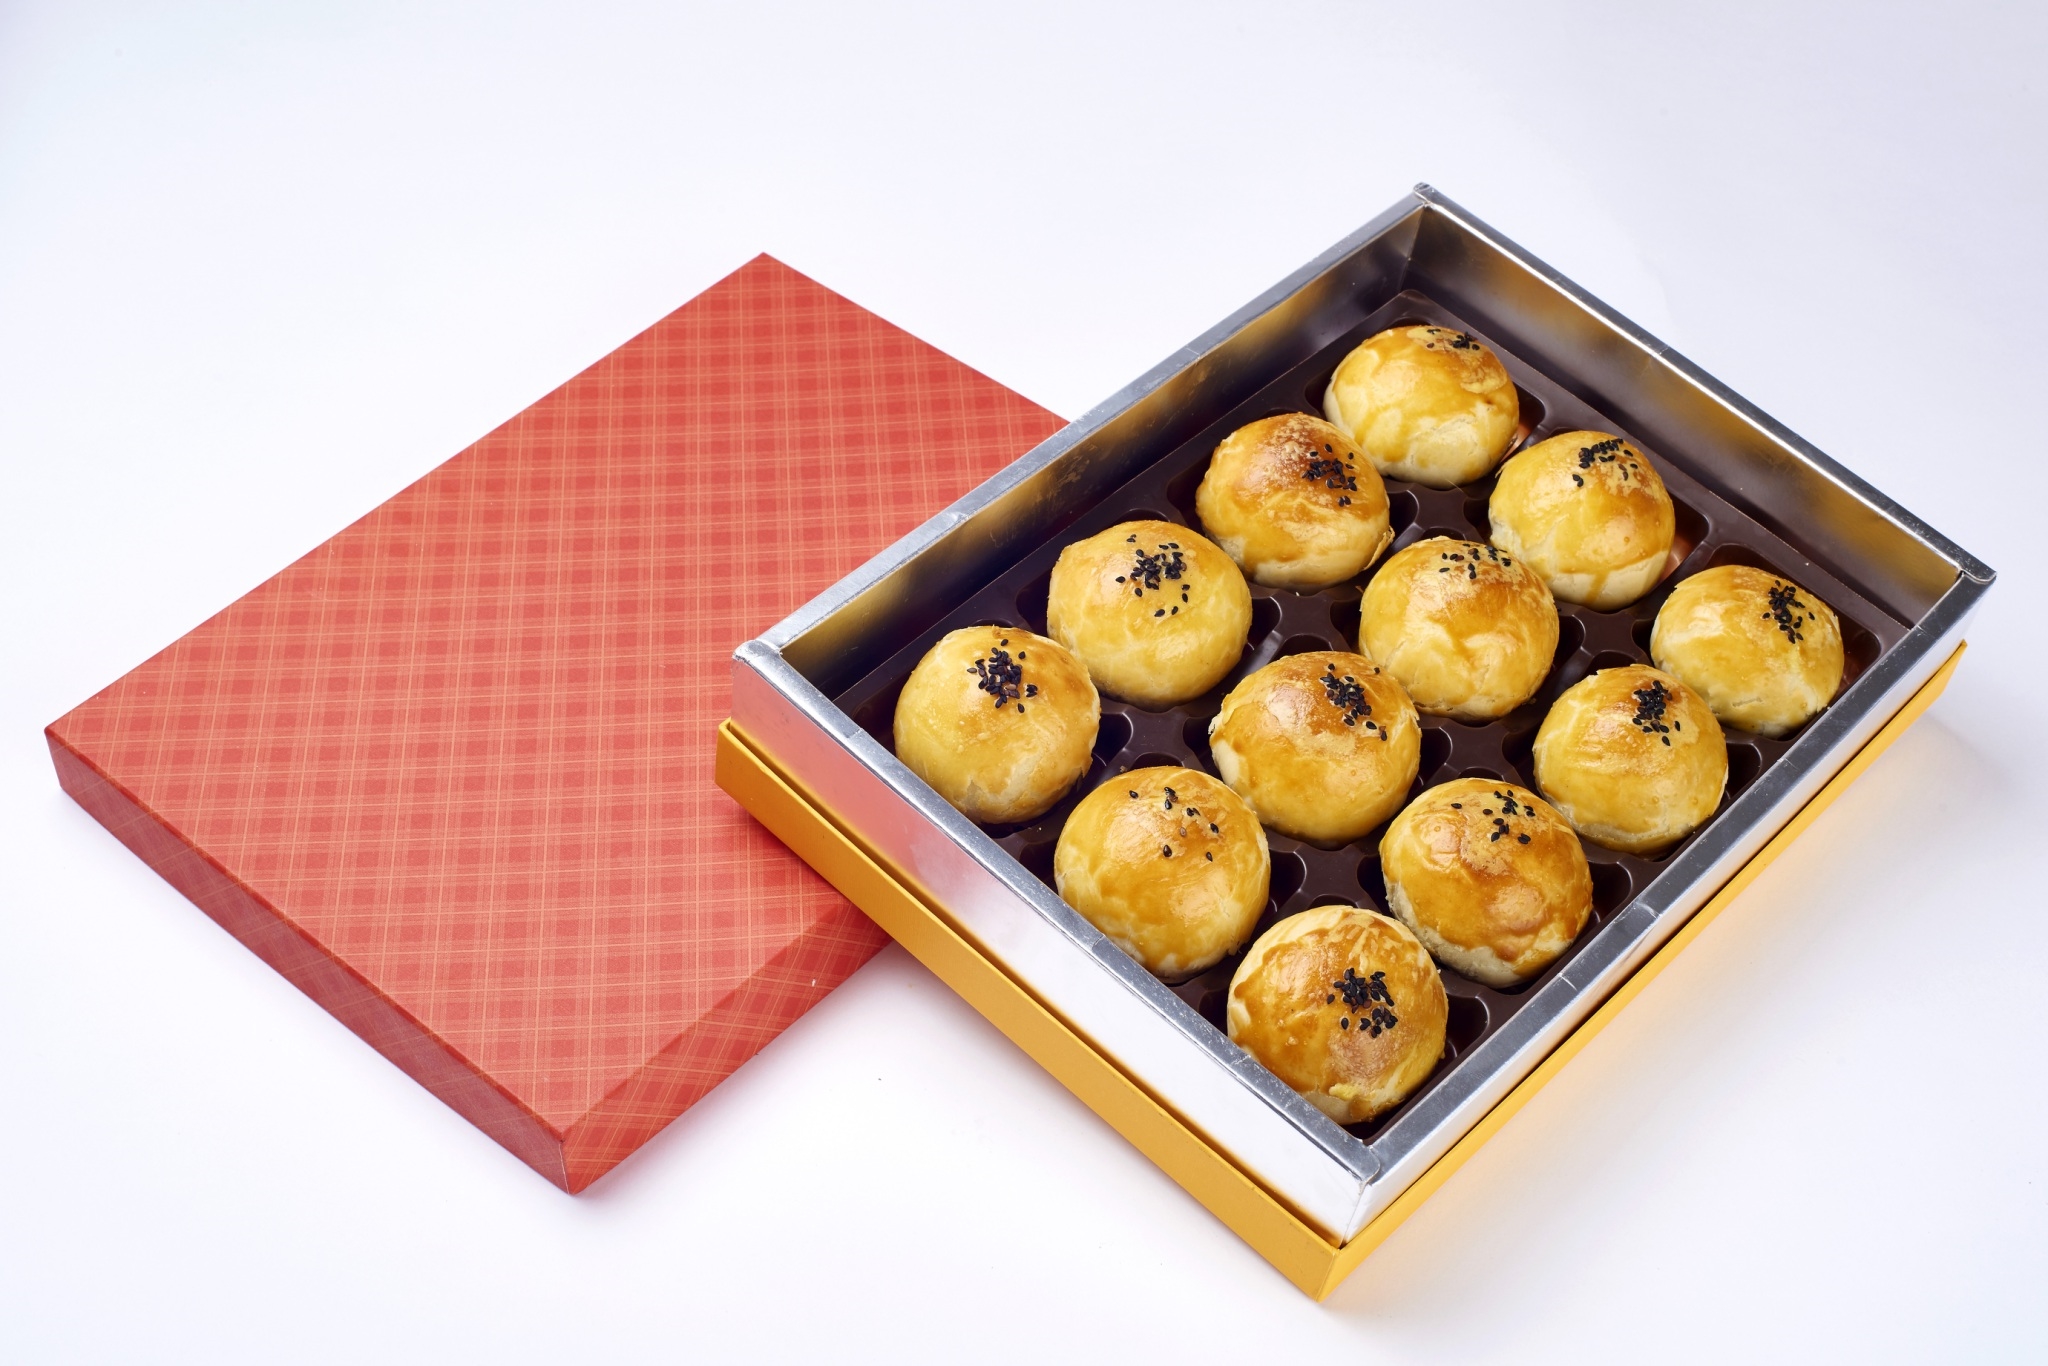 蛋黃酥禮盒(12入)，產品介紹單入包裝